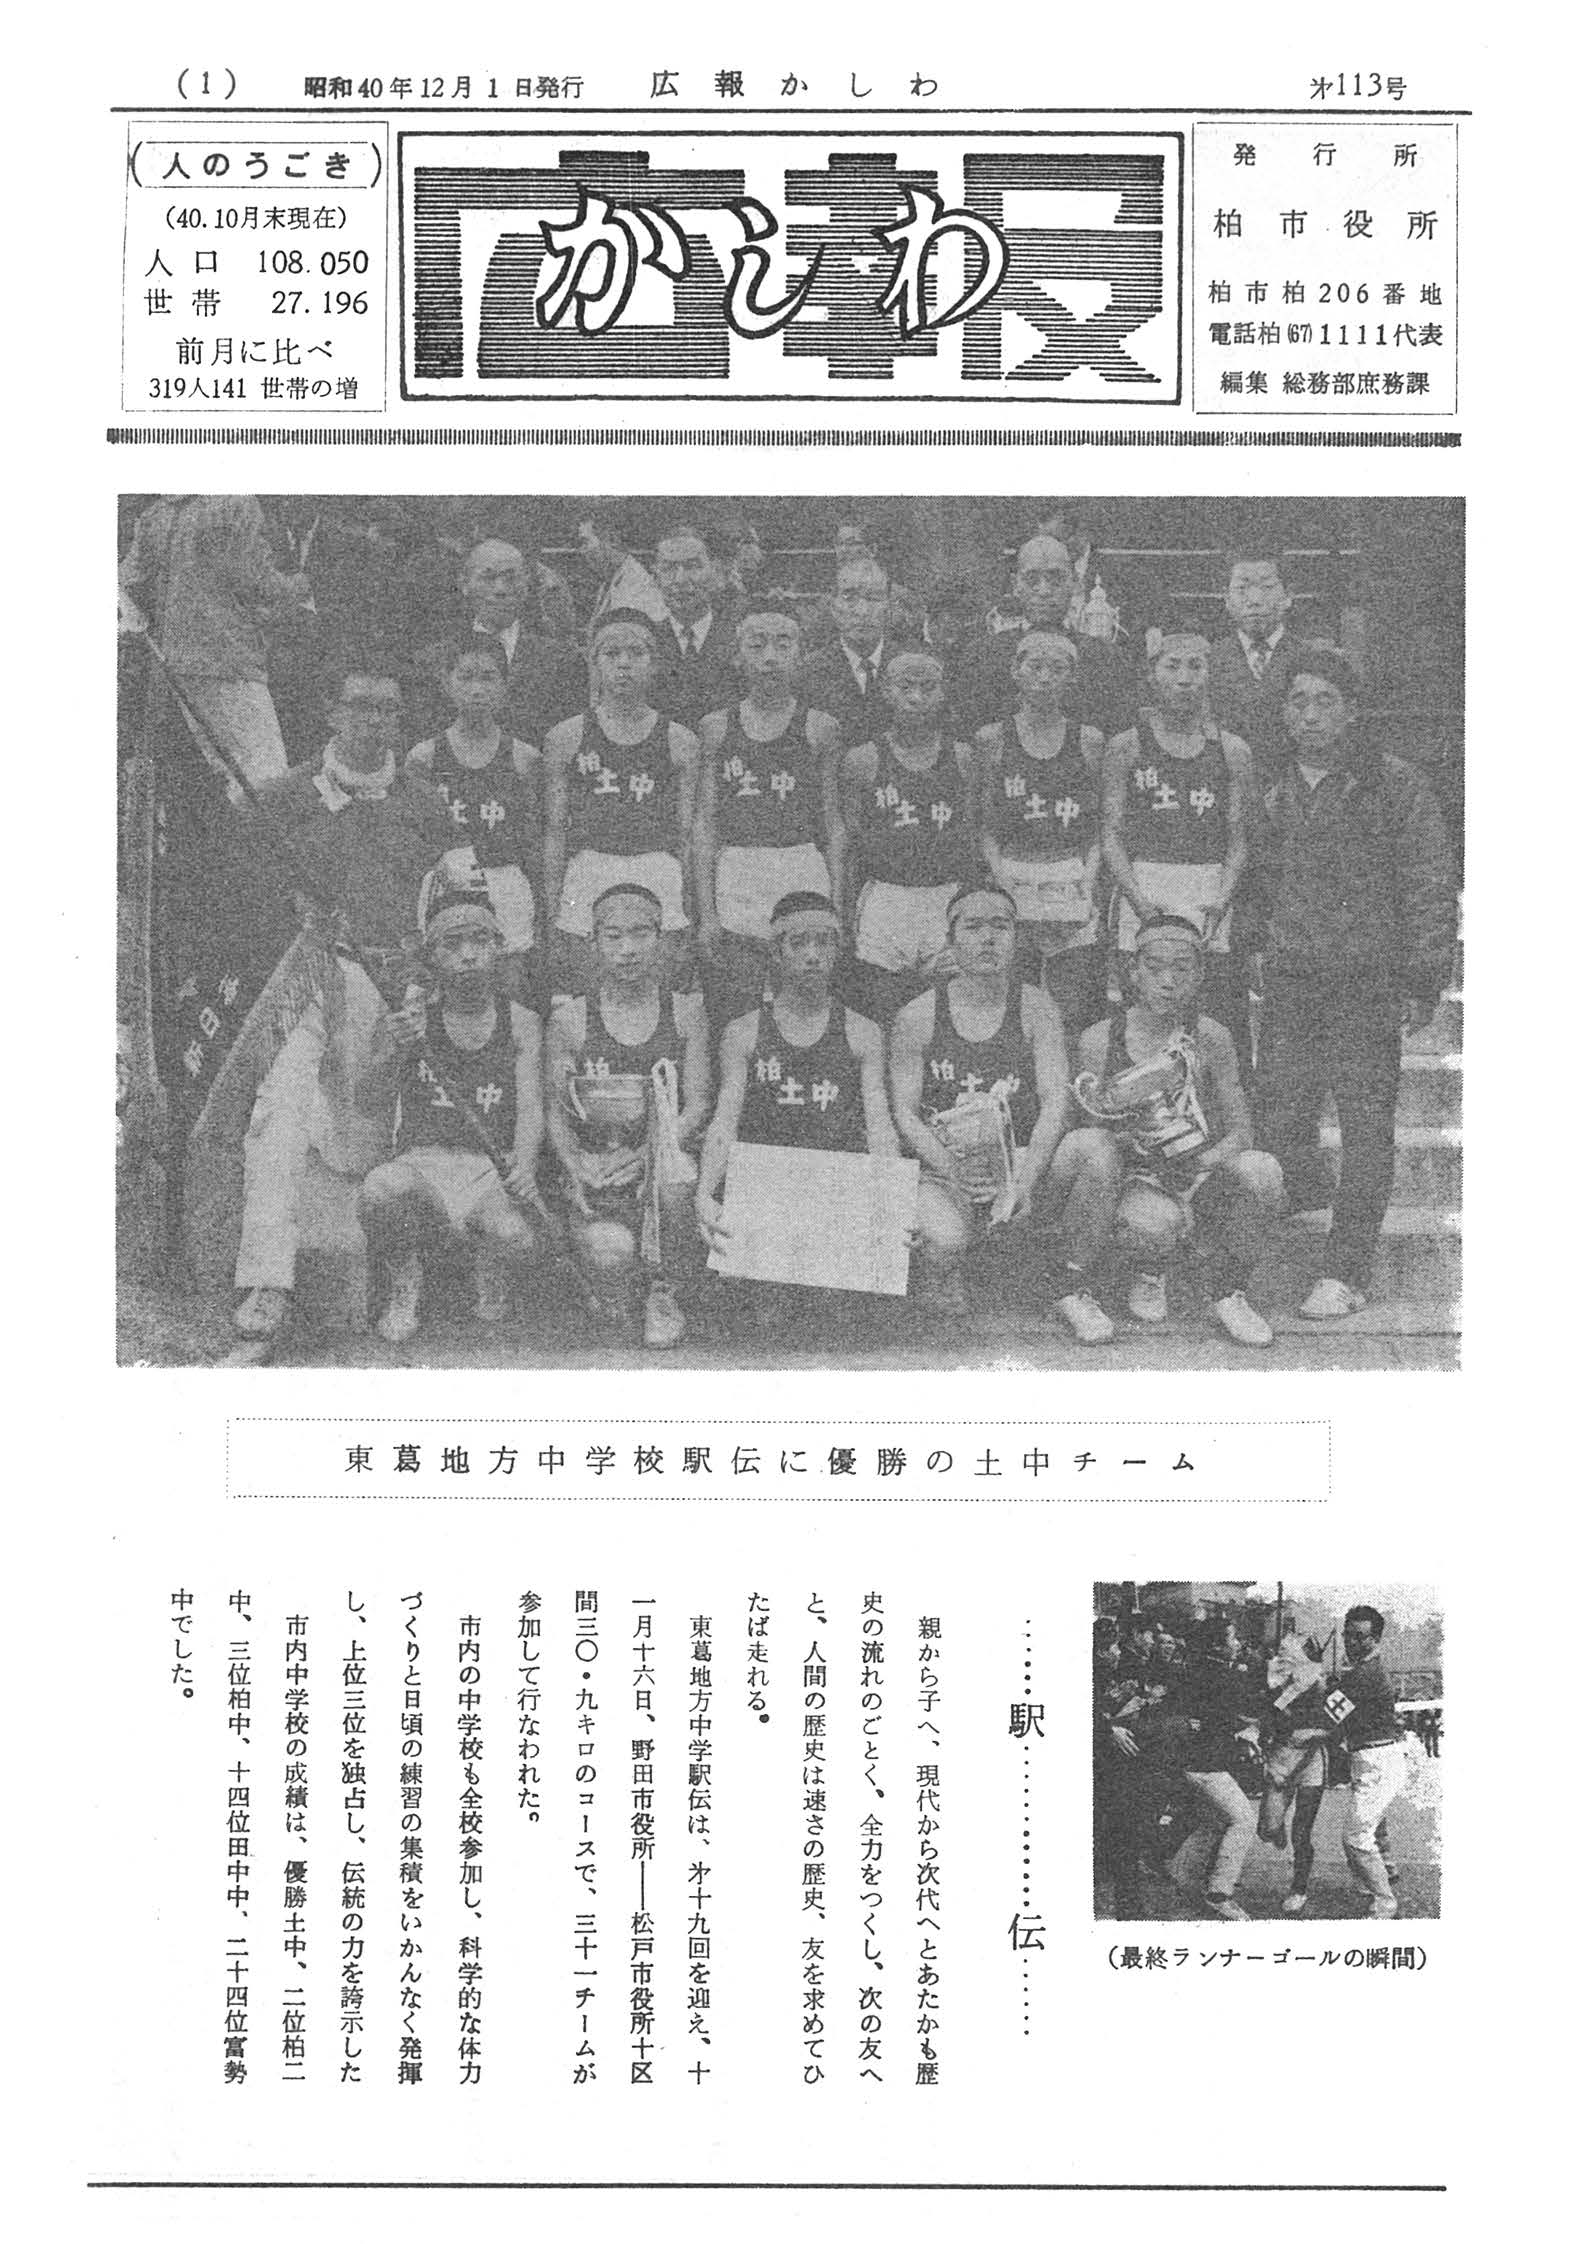 広報かしわ　昭和40年12月1日発行　113号